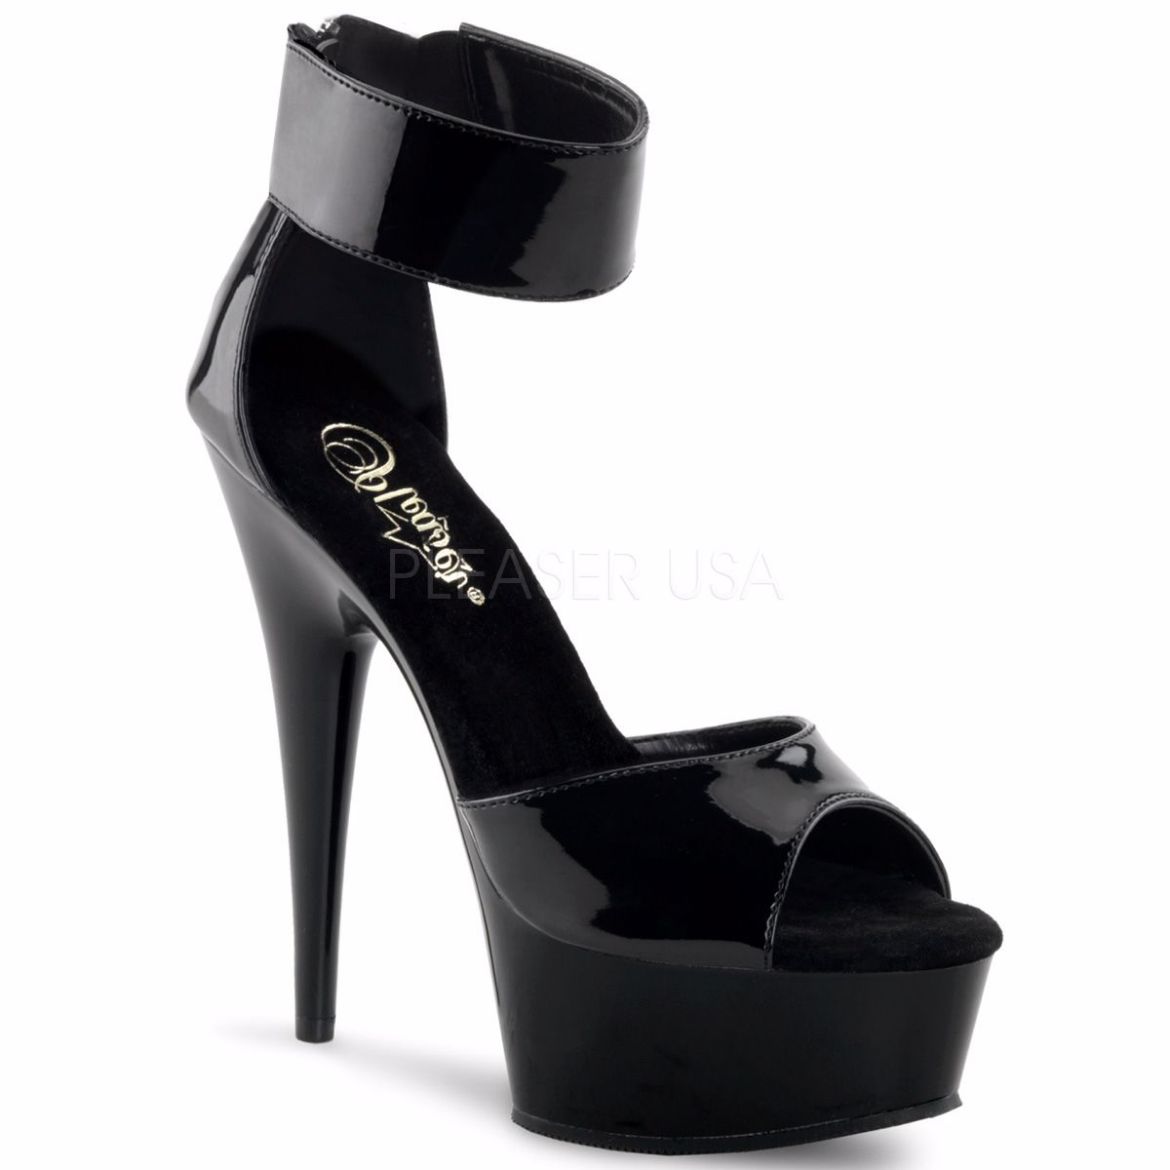 Product image of Pleaser Delight-670-3 Black/Black, 6 inch (15.2 cm) Heel, 1 3/4 inch (4.4 cm) Platform Sandal Shoes